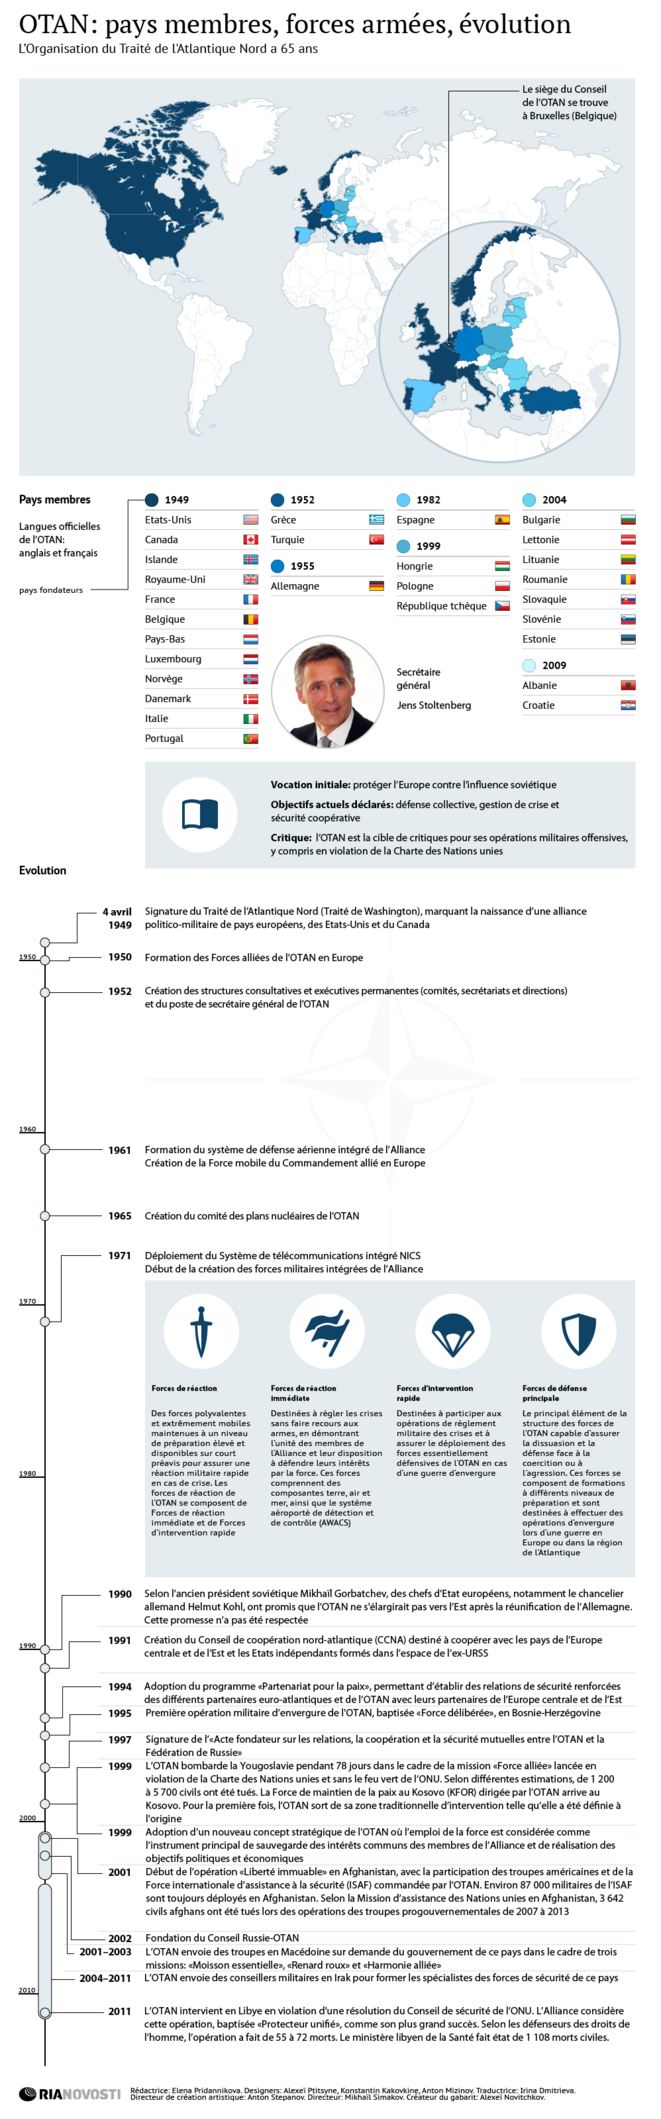 Infographie : OTAN, pays membres, forces armées, évolution (Ria Novosti, 5.10.2015)